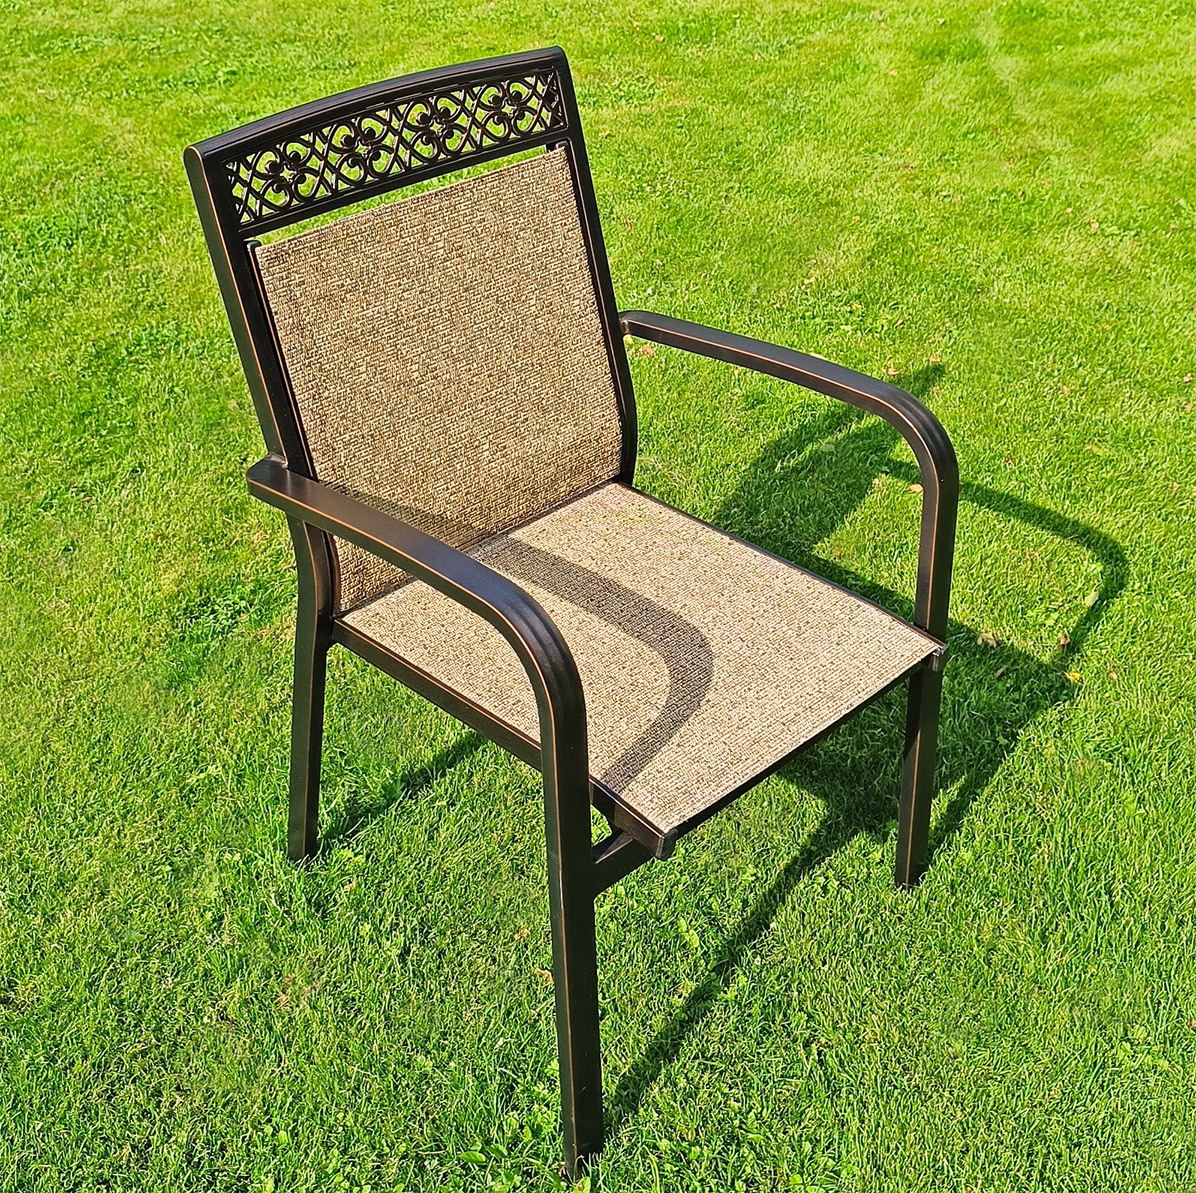 Кресло уличное с текстиленом для летней веранды кафе, шезлонг к бассейну, плетеные стулья и кресла от производителя, кованая мебель с ротангом для сада и дачи, мебель из литого алюминия с плетением